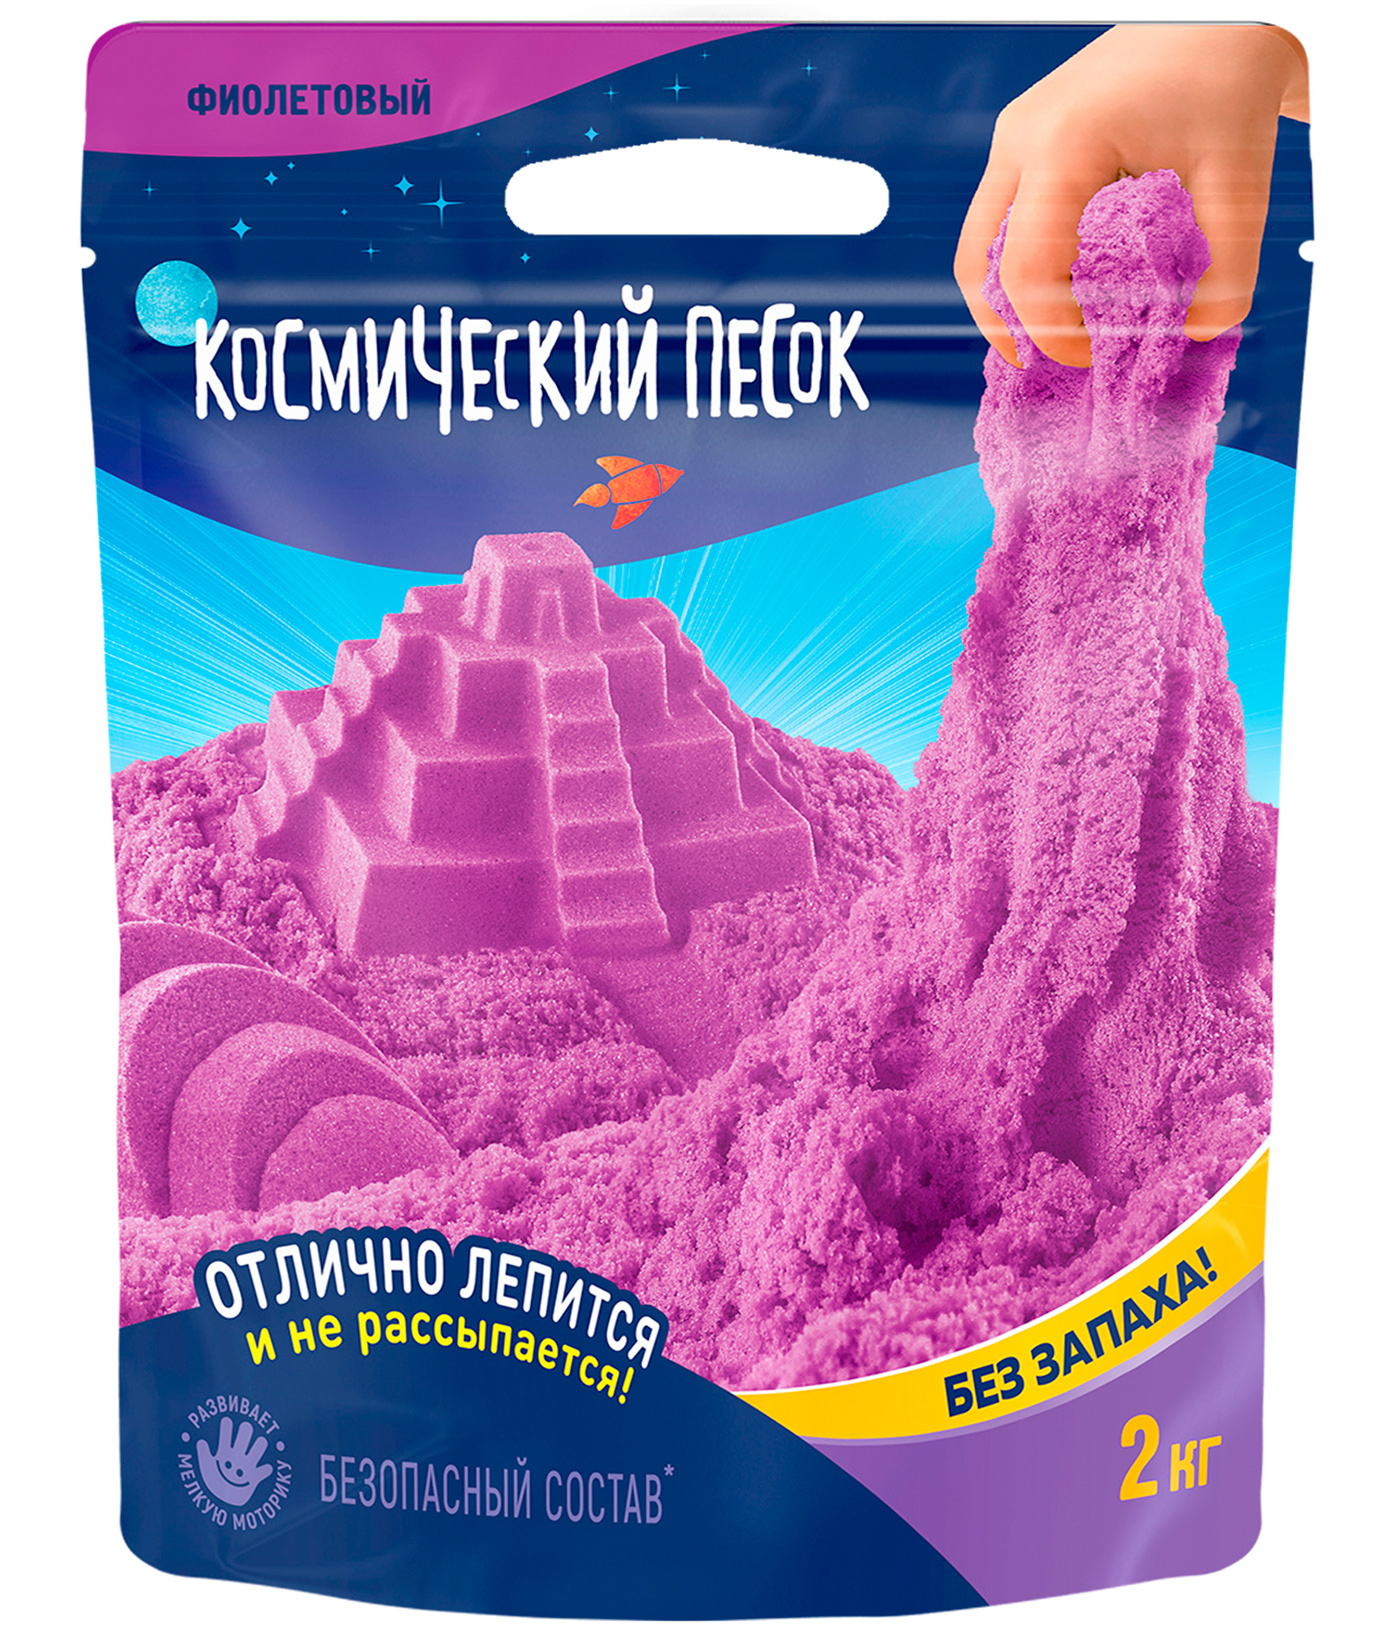 Игрушка для детей Космический песок 2 кг, дой-пак, фиолетовый космический песок розовый 1 кг